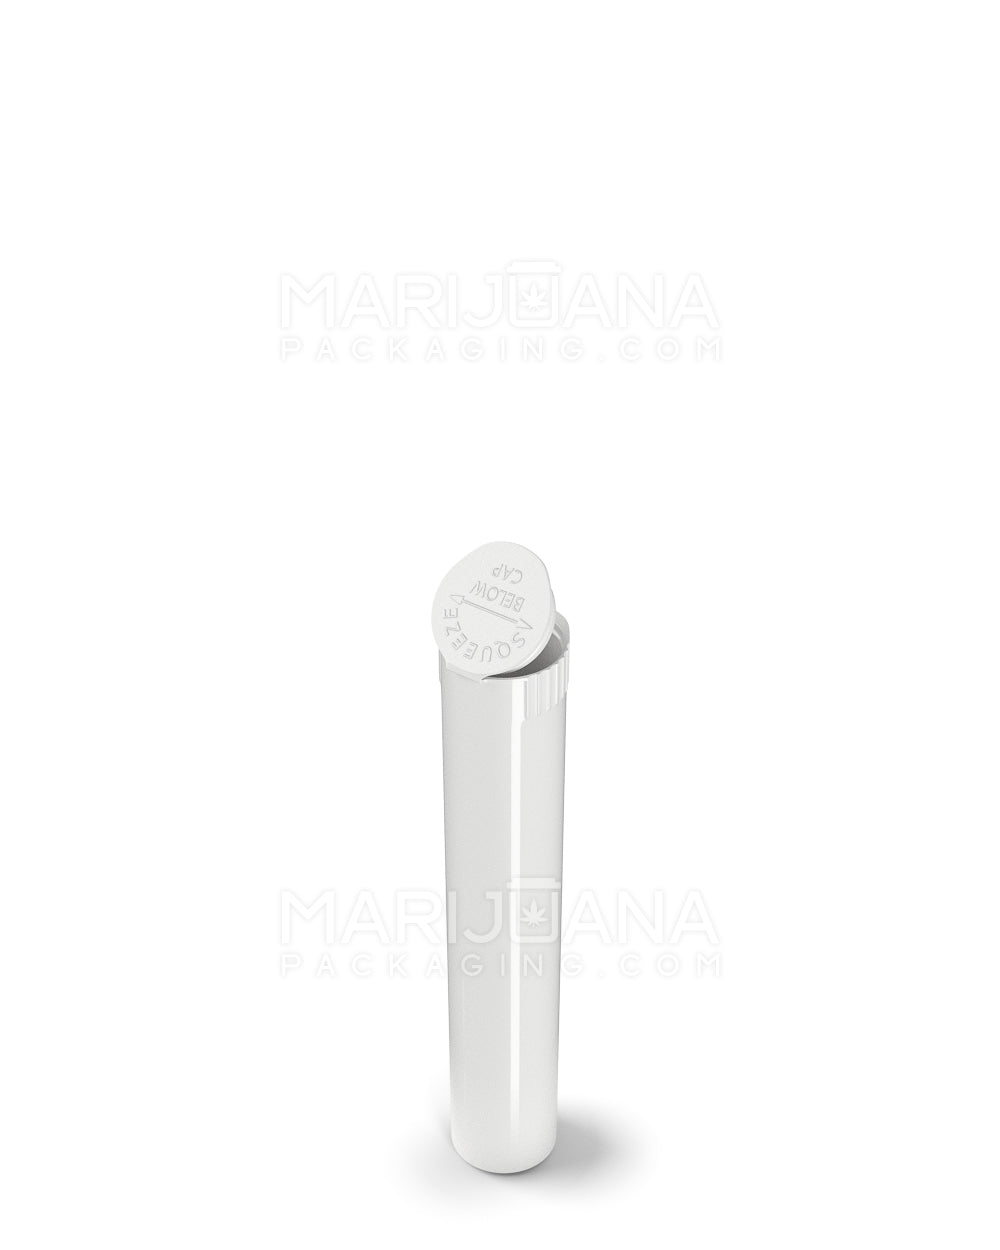 Child Resistant Pop Top Vape Cartridge Tube | 80mm - White | Sample - 4